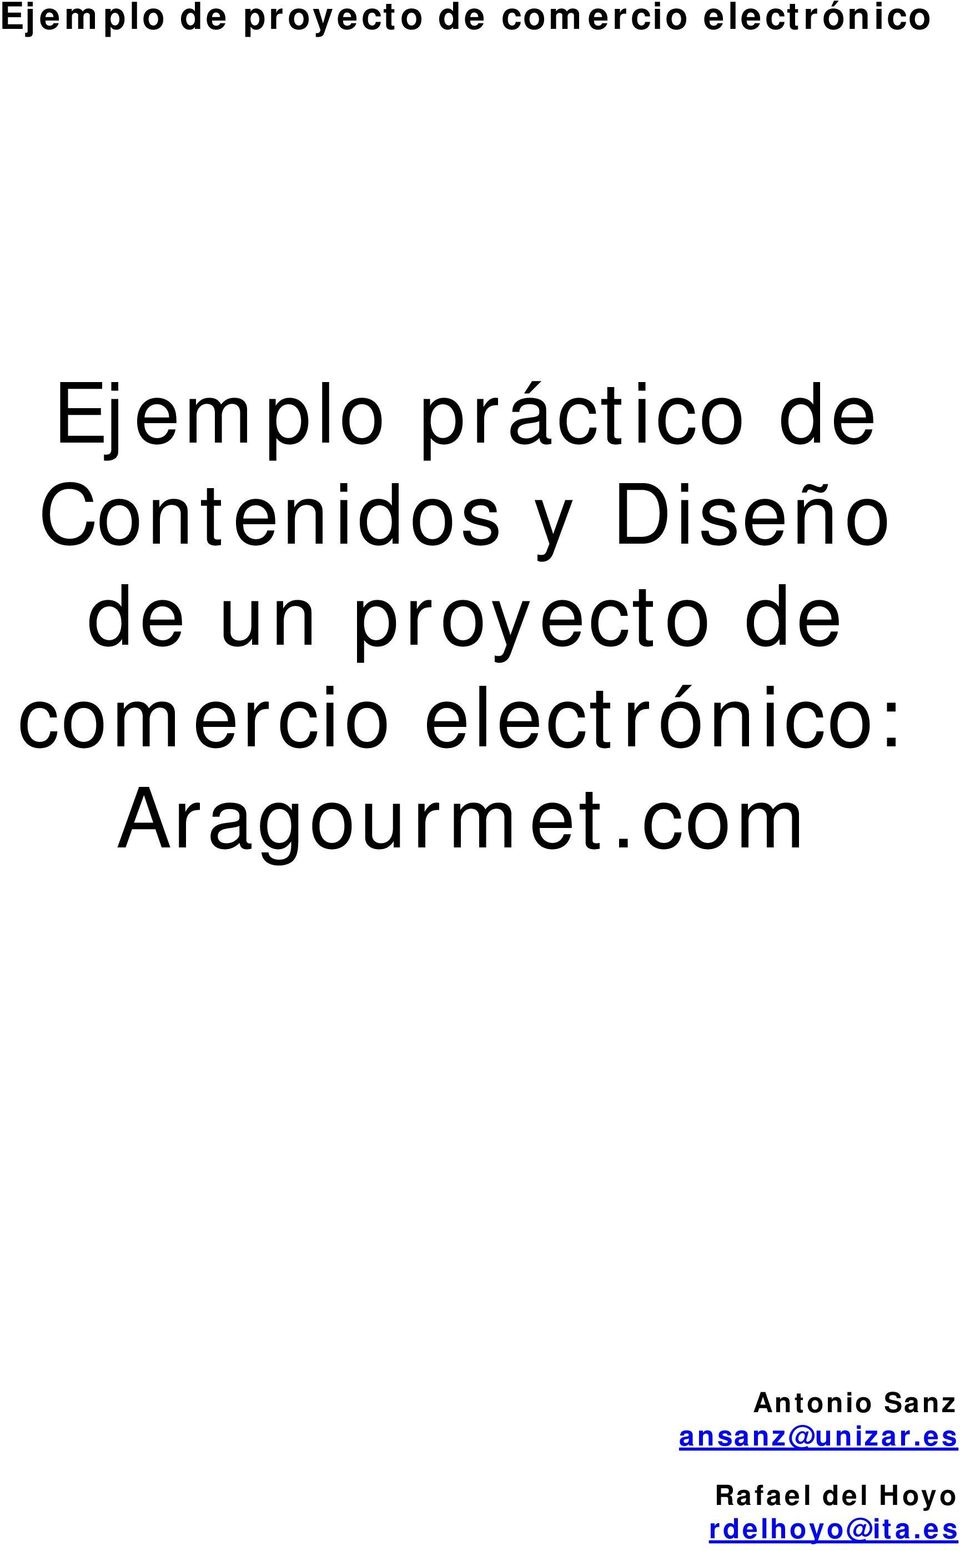 proyecto de comercio electrónico: Aragourmet.